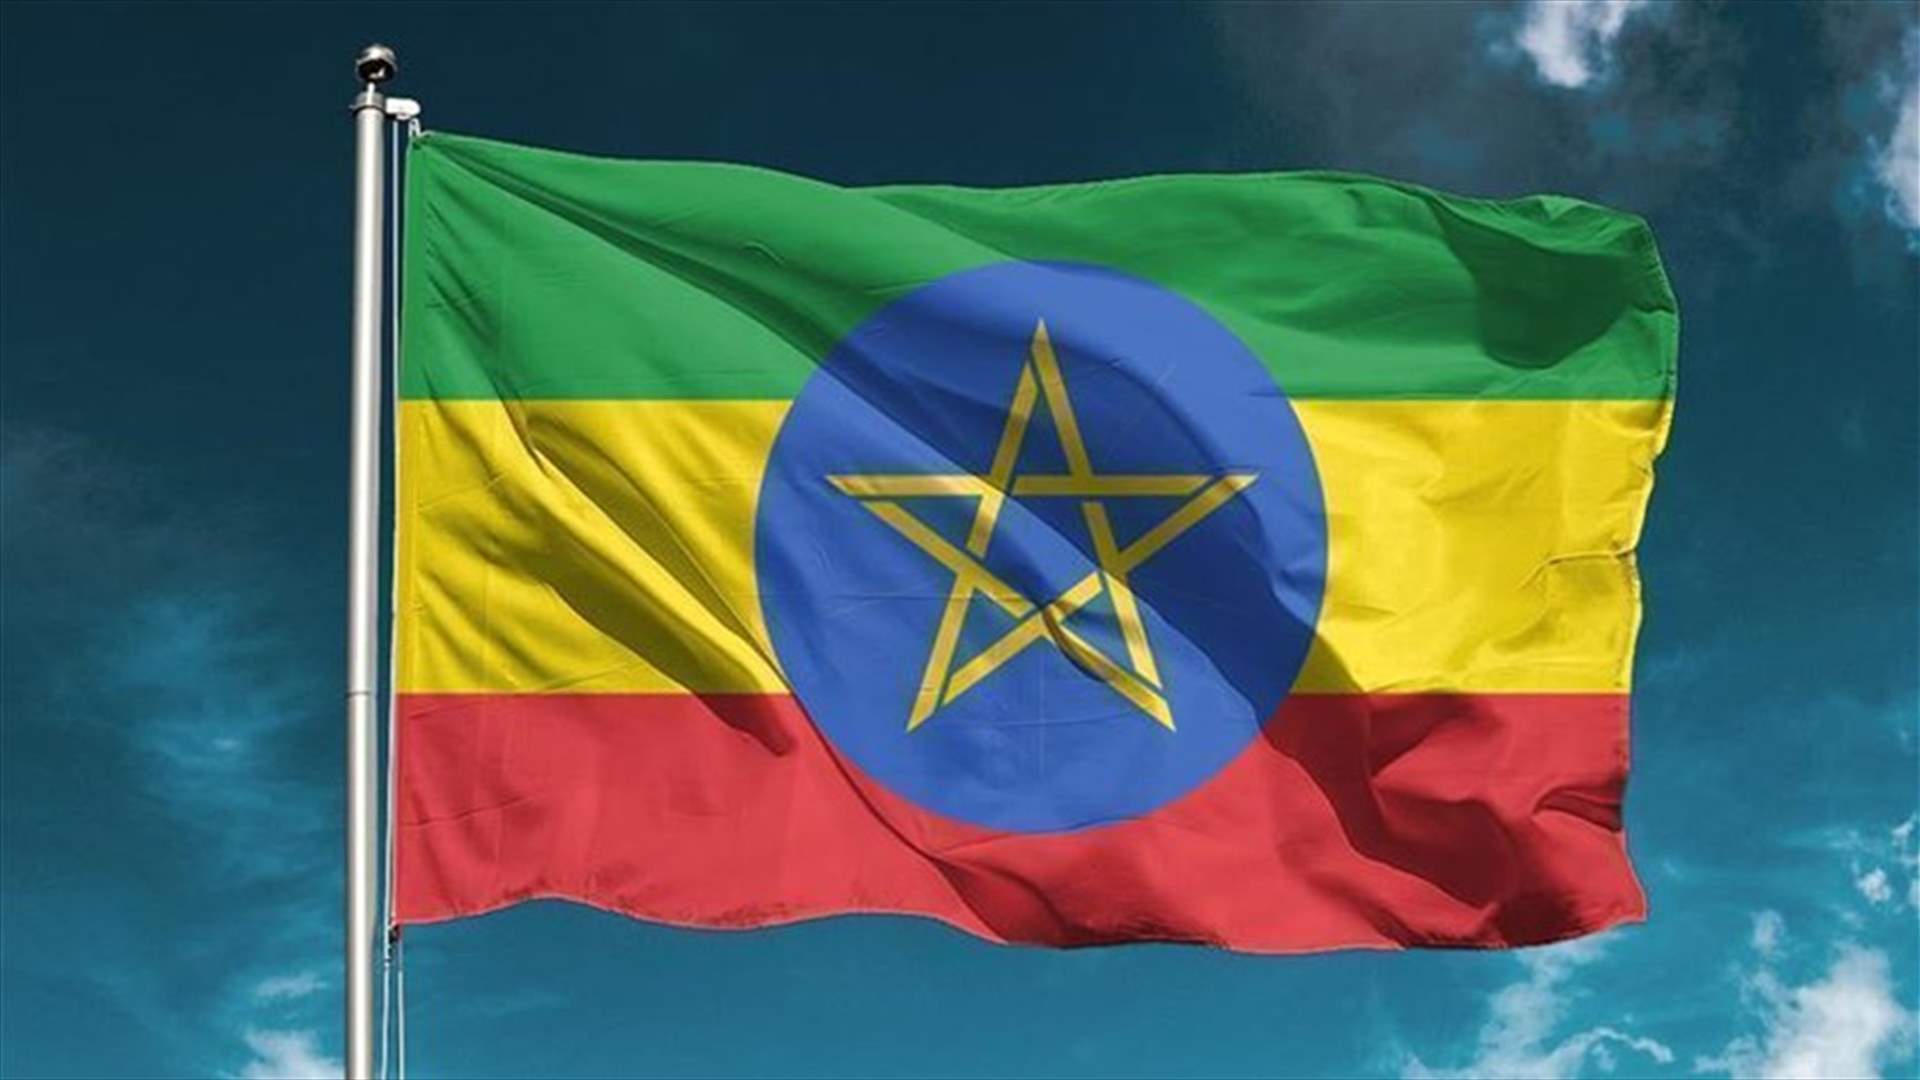 إثيوبيا تعلن اعتقال من يشتبه بأنهم متشددون يخططون لهجمات